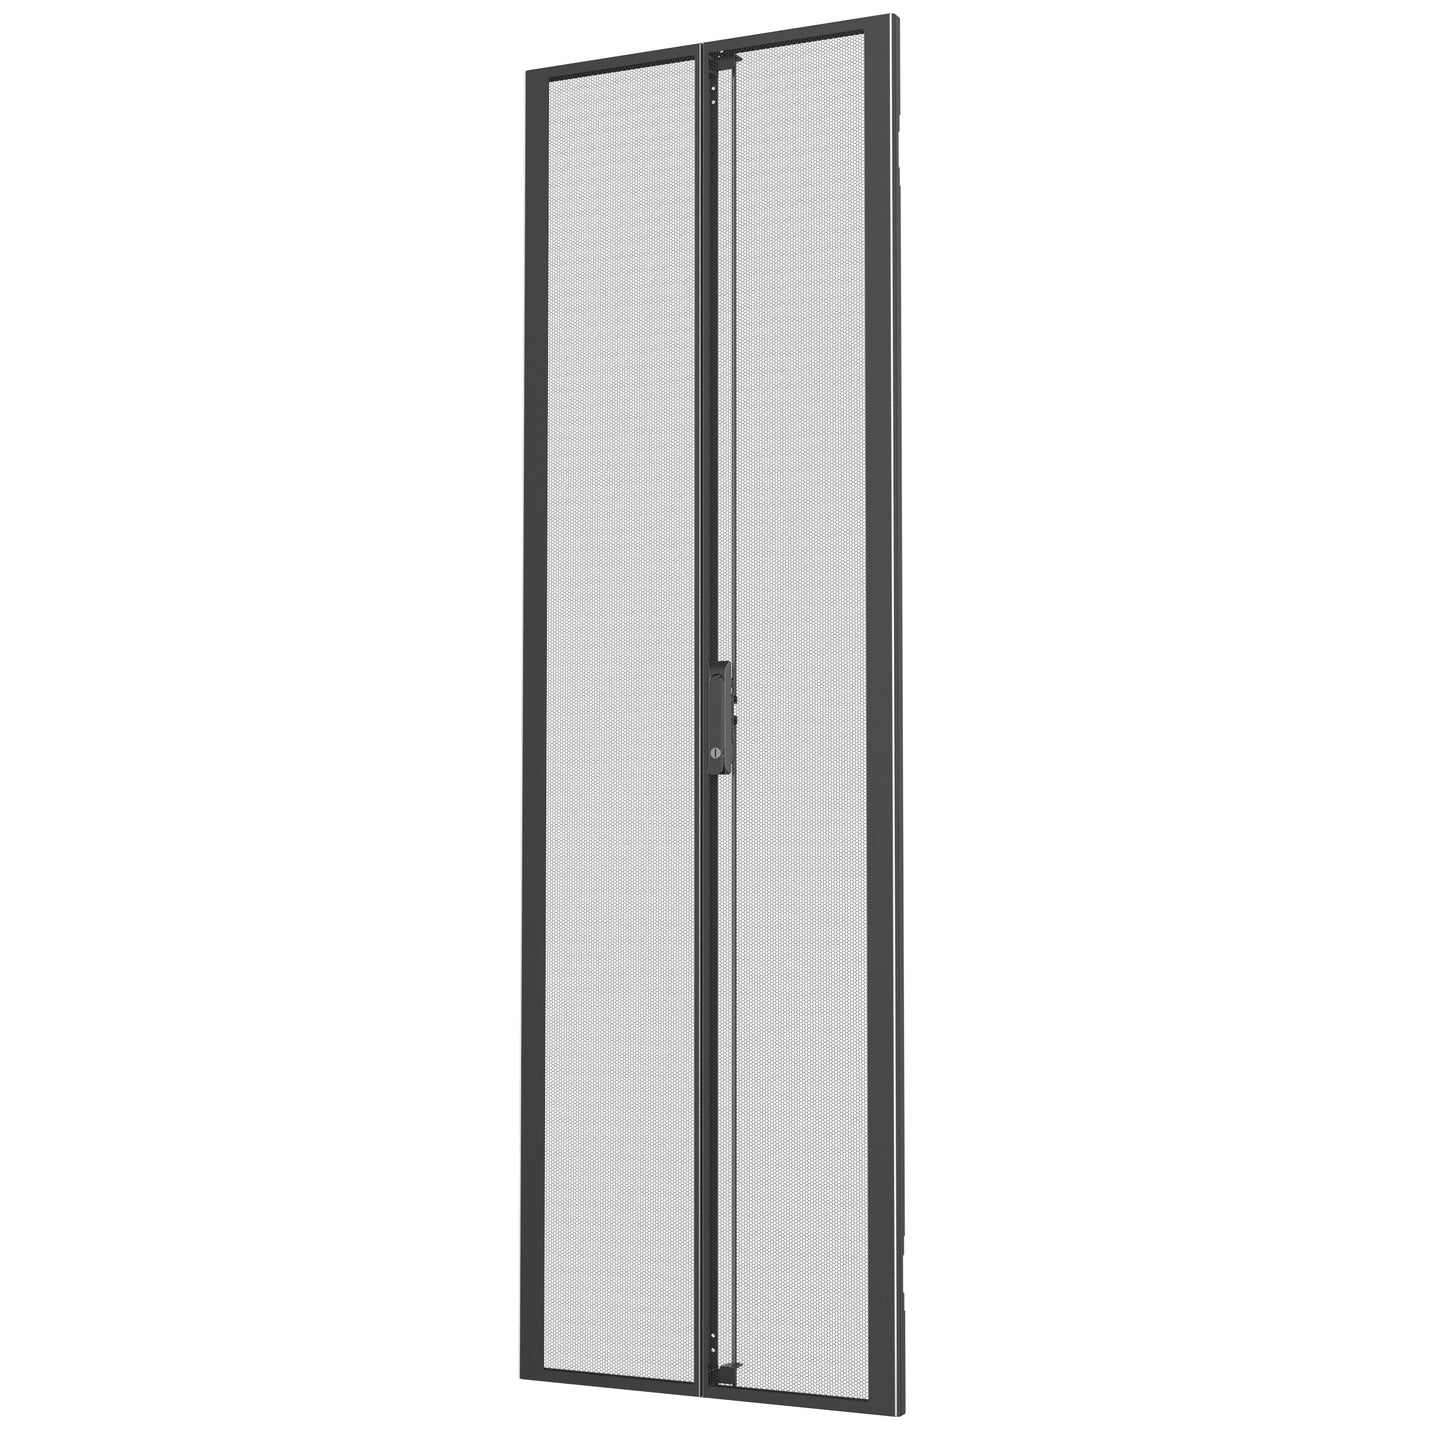 Vertiv Vra6007 Rack Accessory Double Door